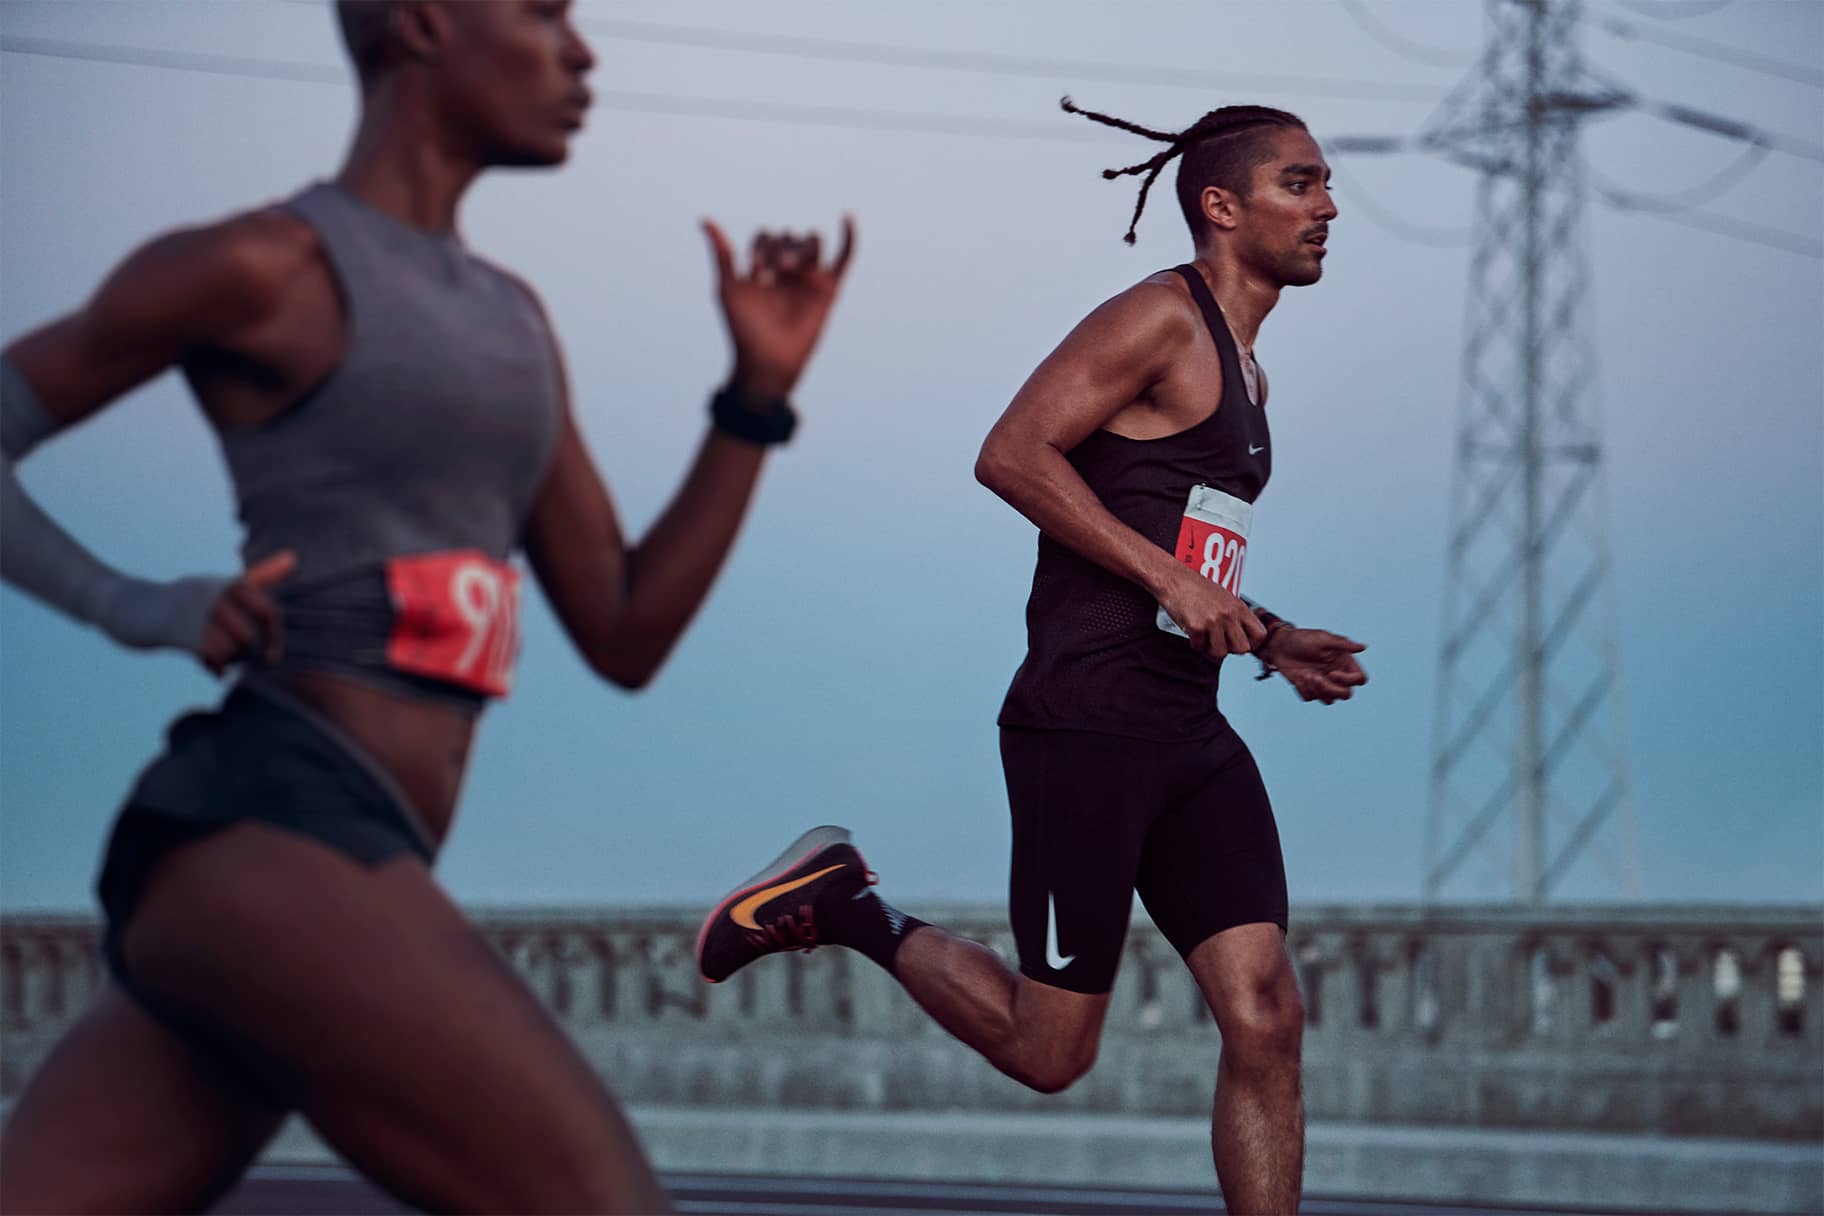 Nike schuhe damen amazon - Die Produkte unter allen verglichenenNike schuhe damen amazon